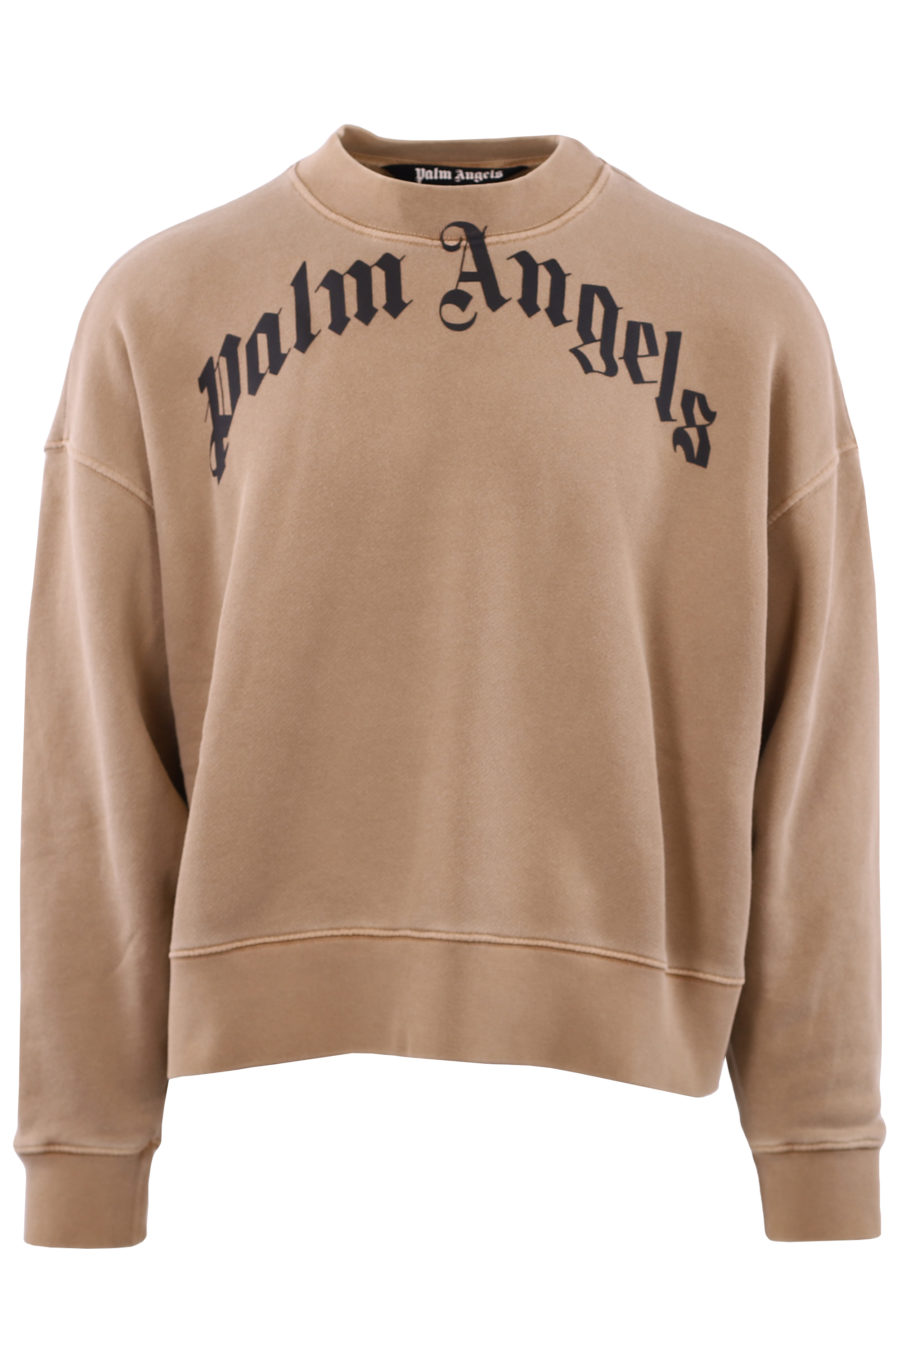 Beige sweatshirt with brand logo - IMG 7194